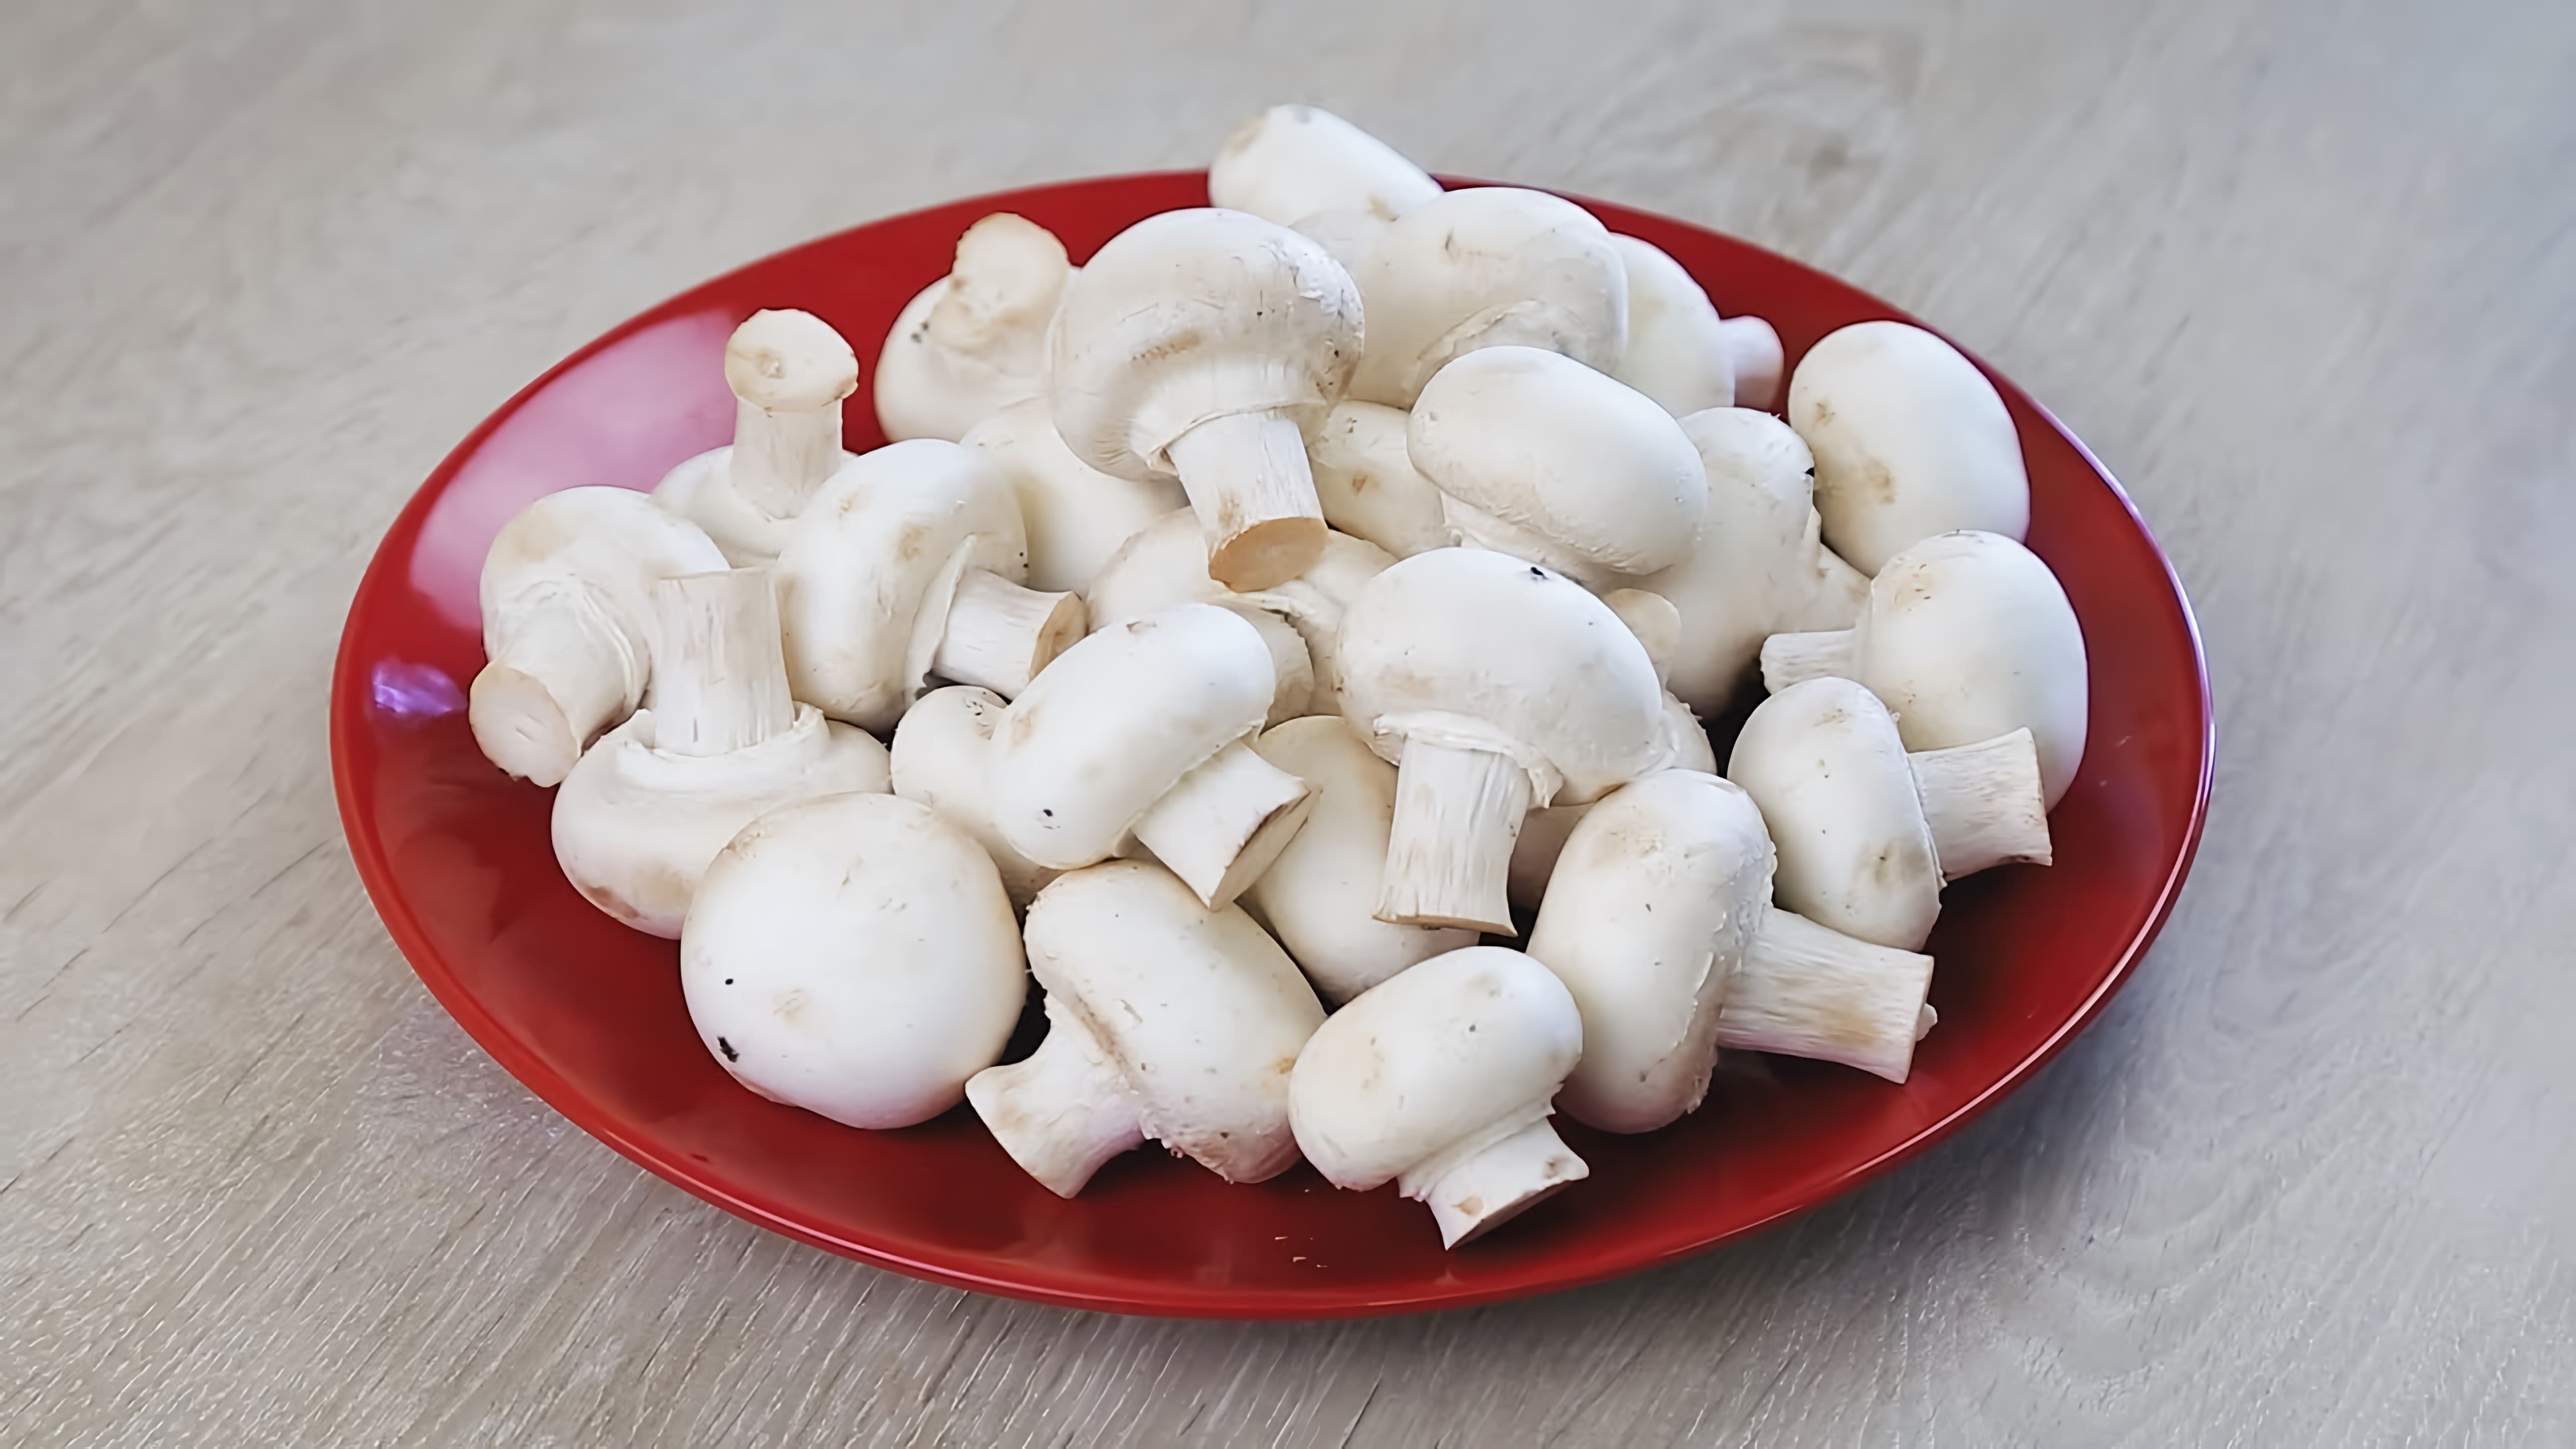 - Представлены пять рецептов с грибами: маринованные грибы, пирог с грибами и картофелем, фаршированные грибы (зразы), котлеты из грибов и овощей, и грибной суп